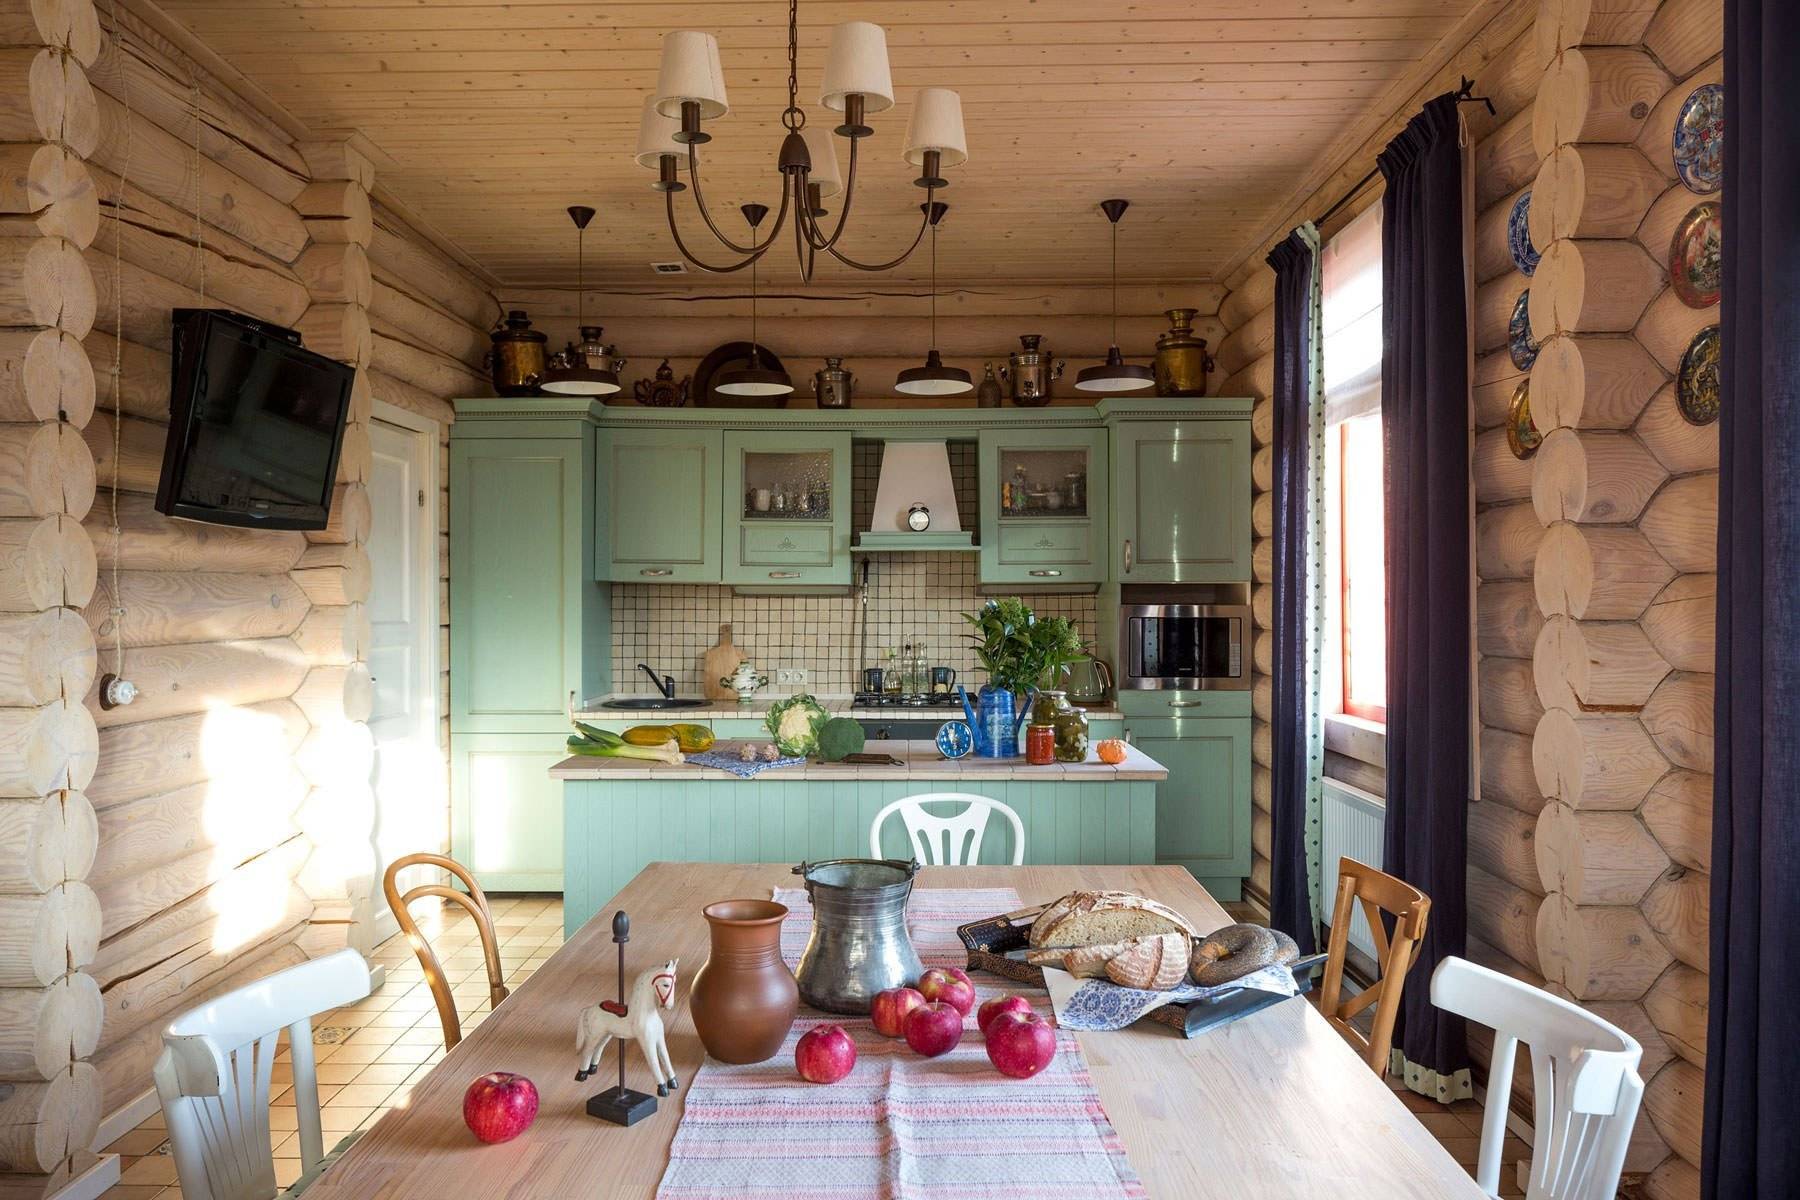 Мини кухня для дачи: эконом класса, особенности кухонной мебели, полезные советы, фото